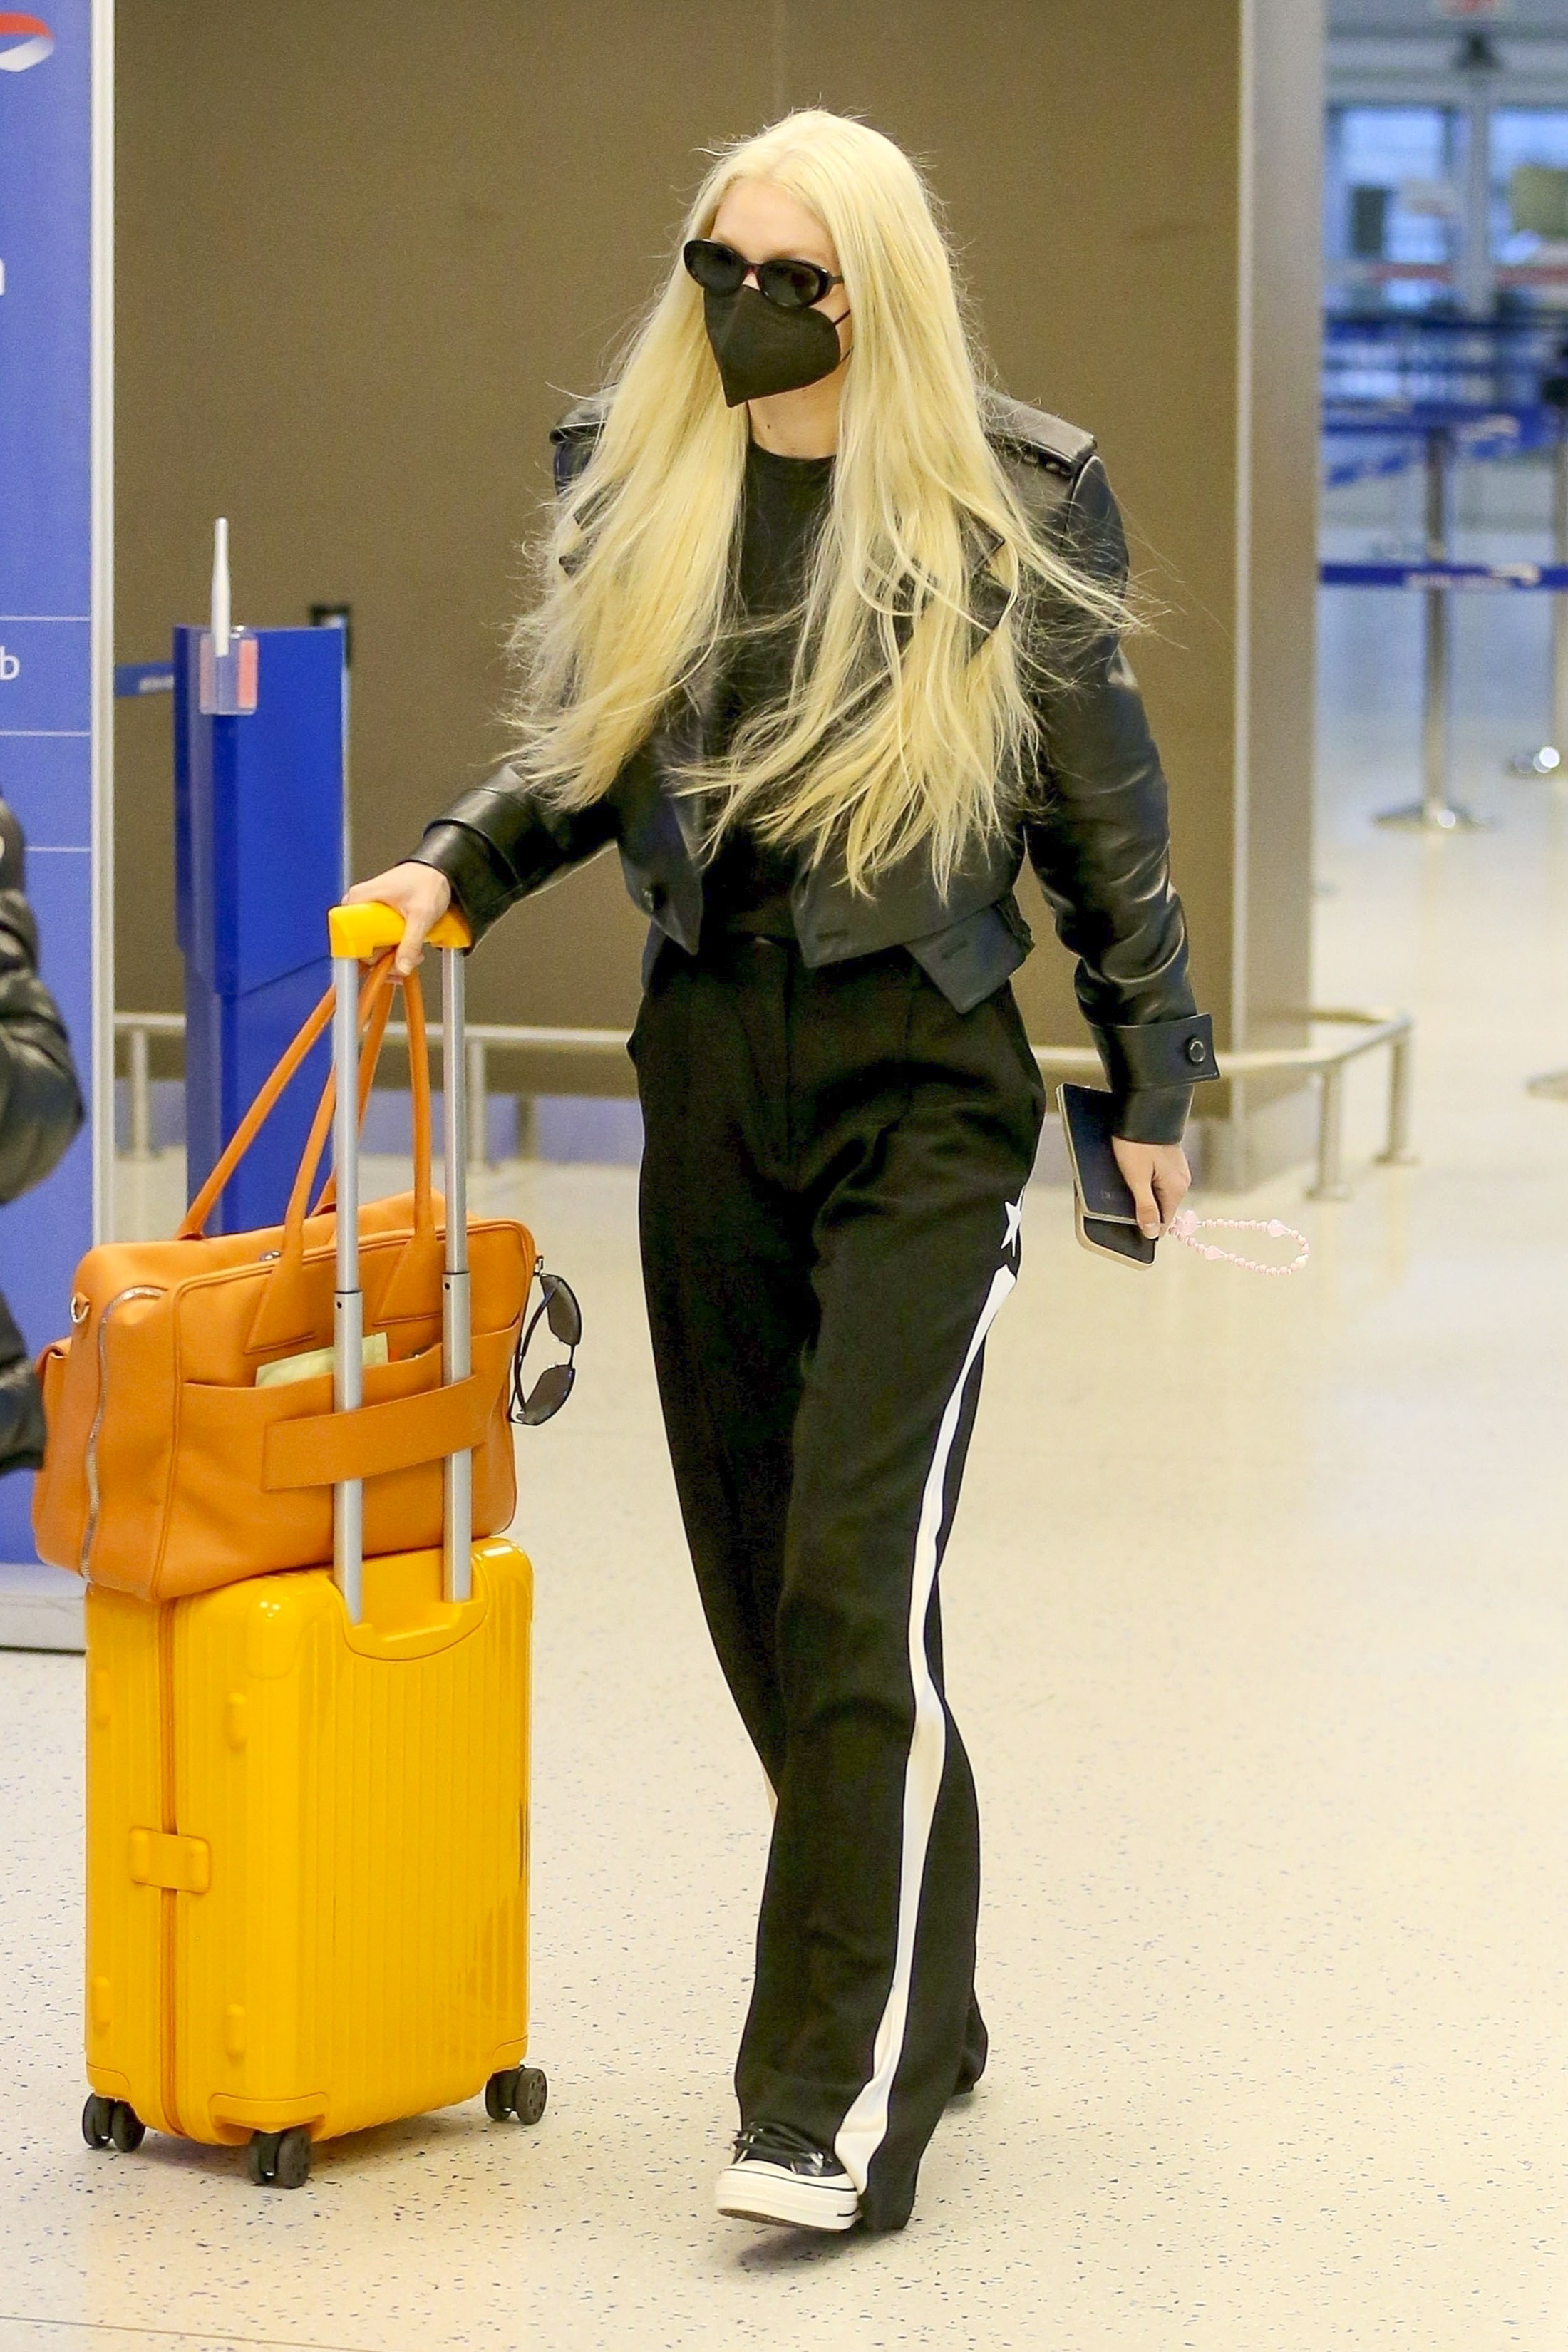 Gigi Hadid fue fotografiada en el aeropuerto de Nueva York. Para viajar, eligió un look cómodo: pantalón deportivo, remera negra y campera de cuero del mismo color. En tanto, su valija de mano era color amarillo y su cartera, naranja